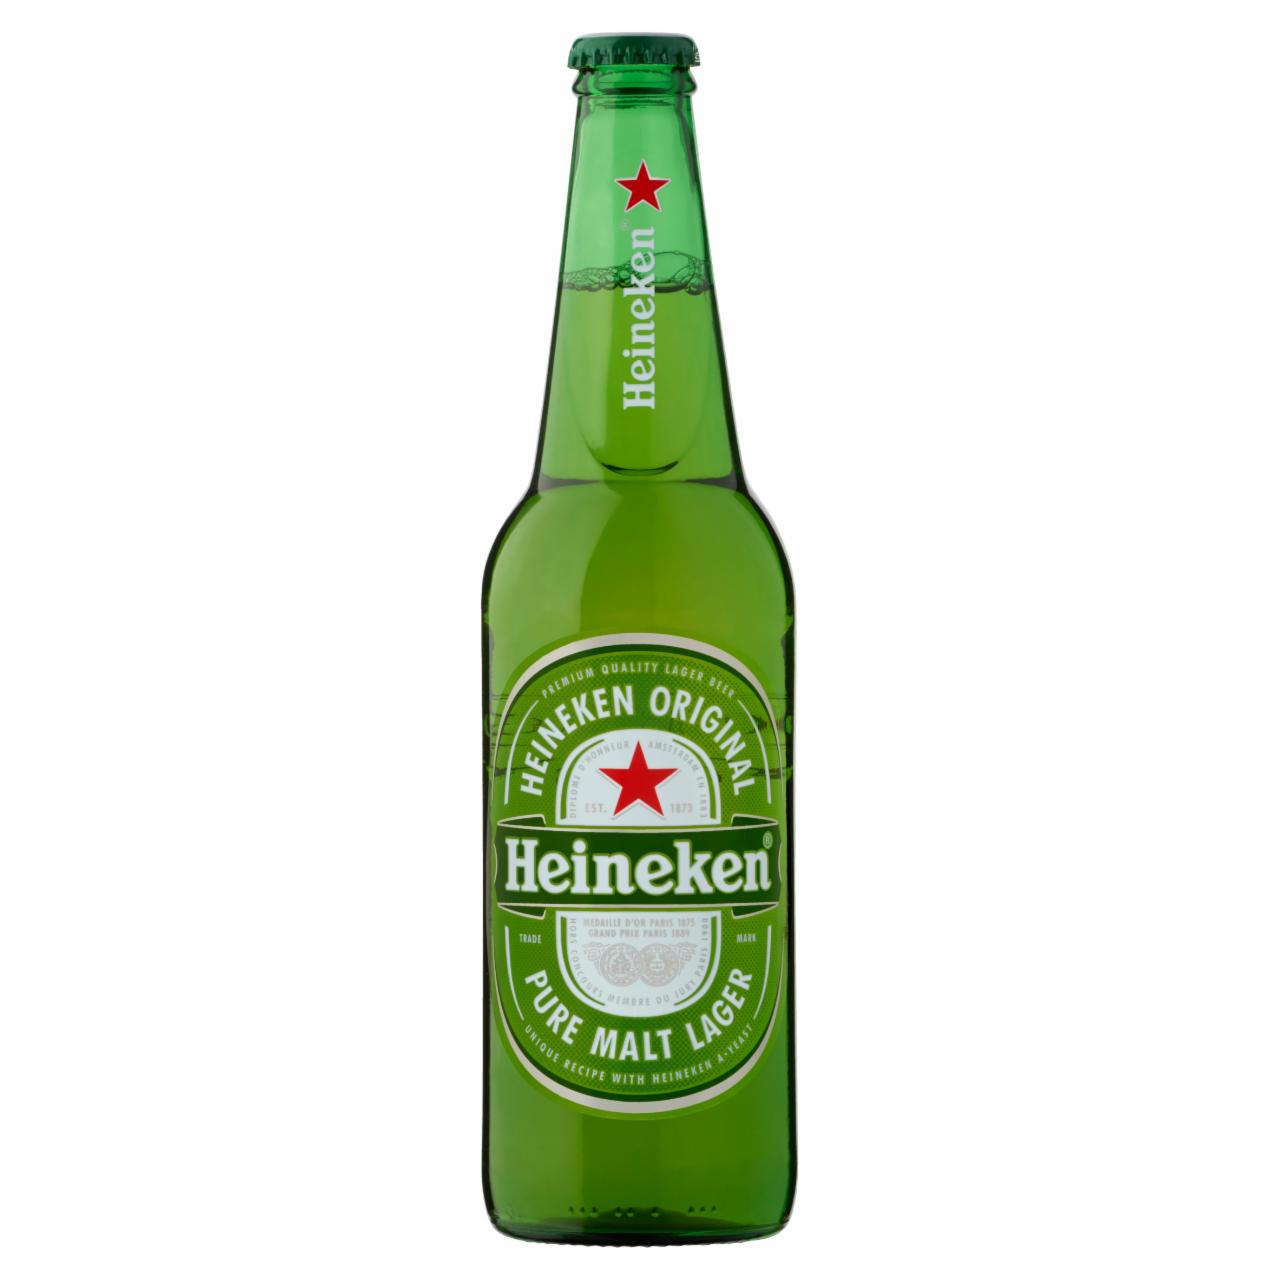 Képek - Heineken minőségi világos sör 5% 0,5 l üveg